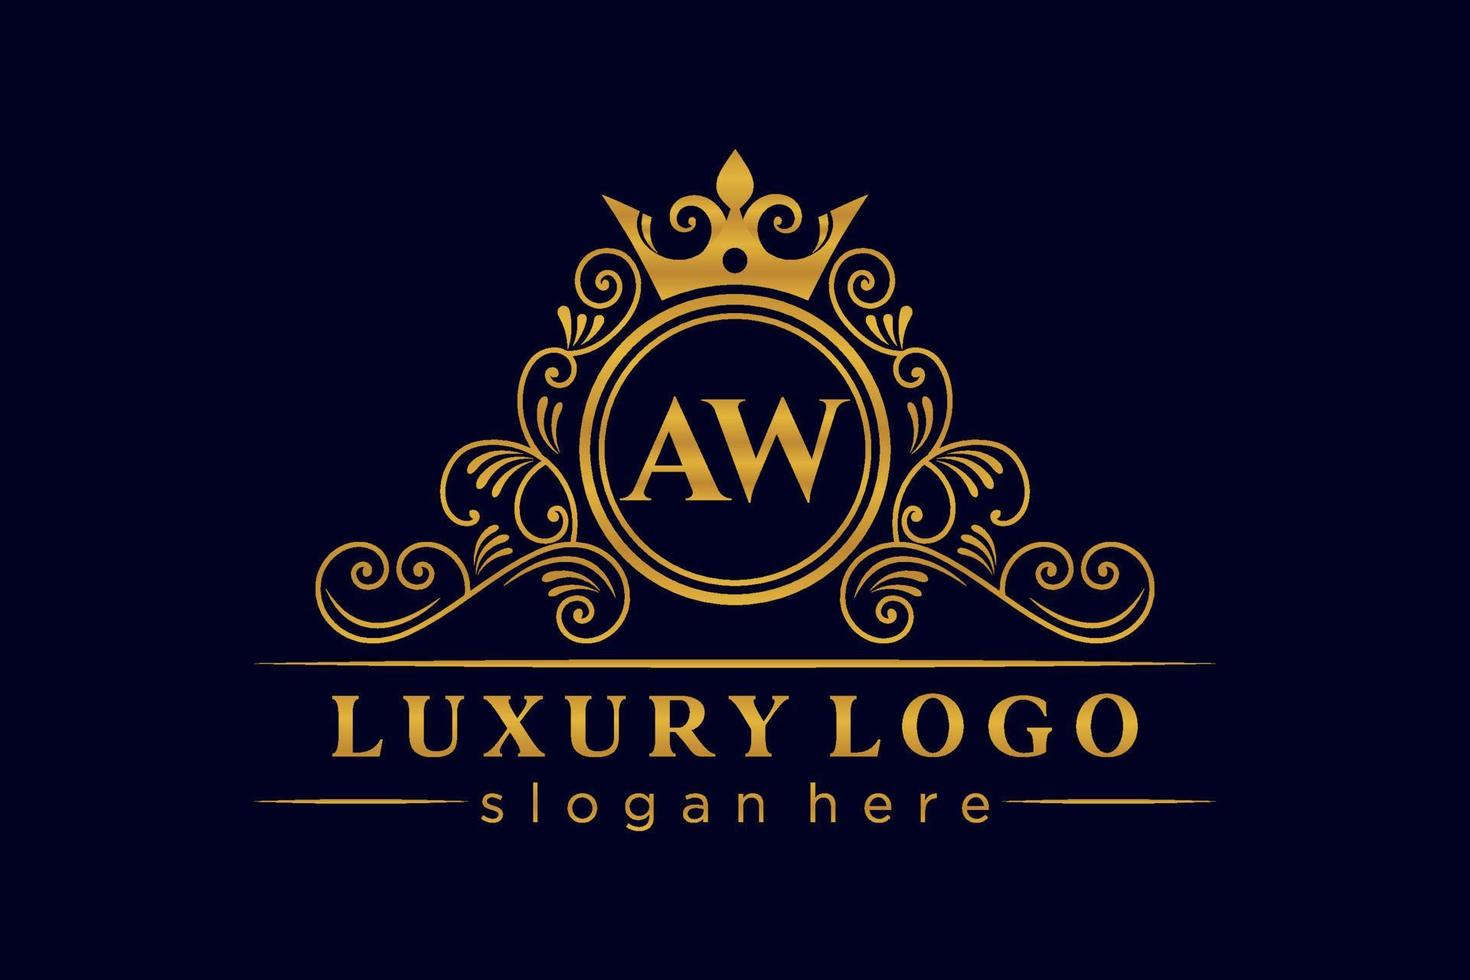 aw letra inicial oro caligráfico femenino floral dibujado a mano monograma heráldico antiguo estilo vintage lujo diseño de logotipo vector premium